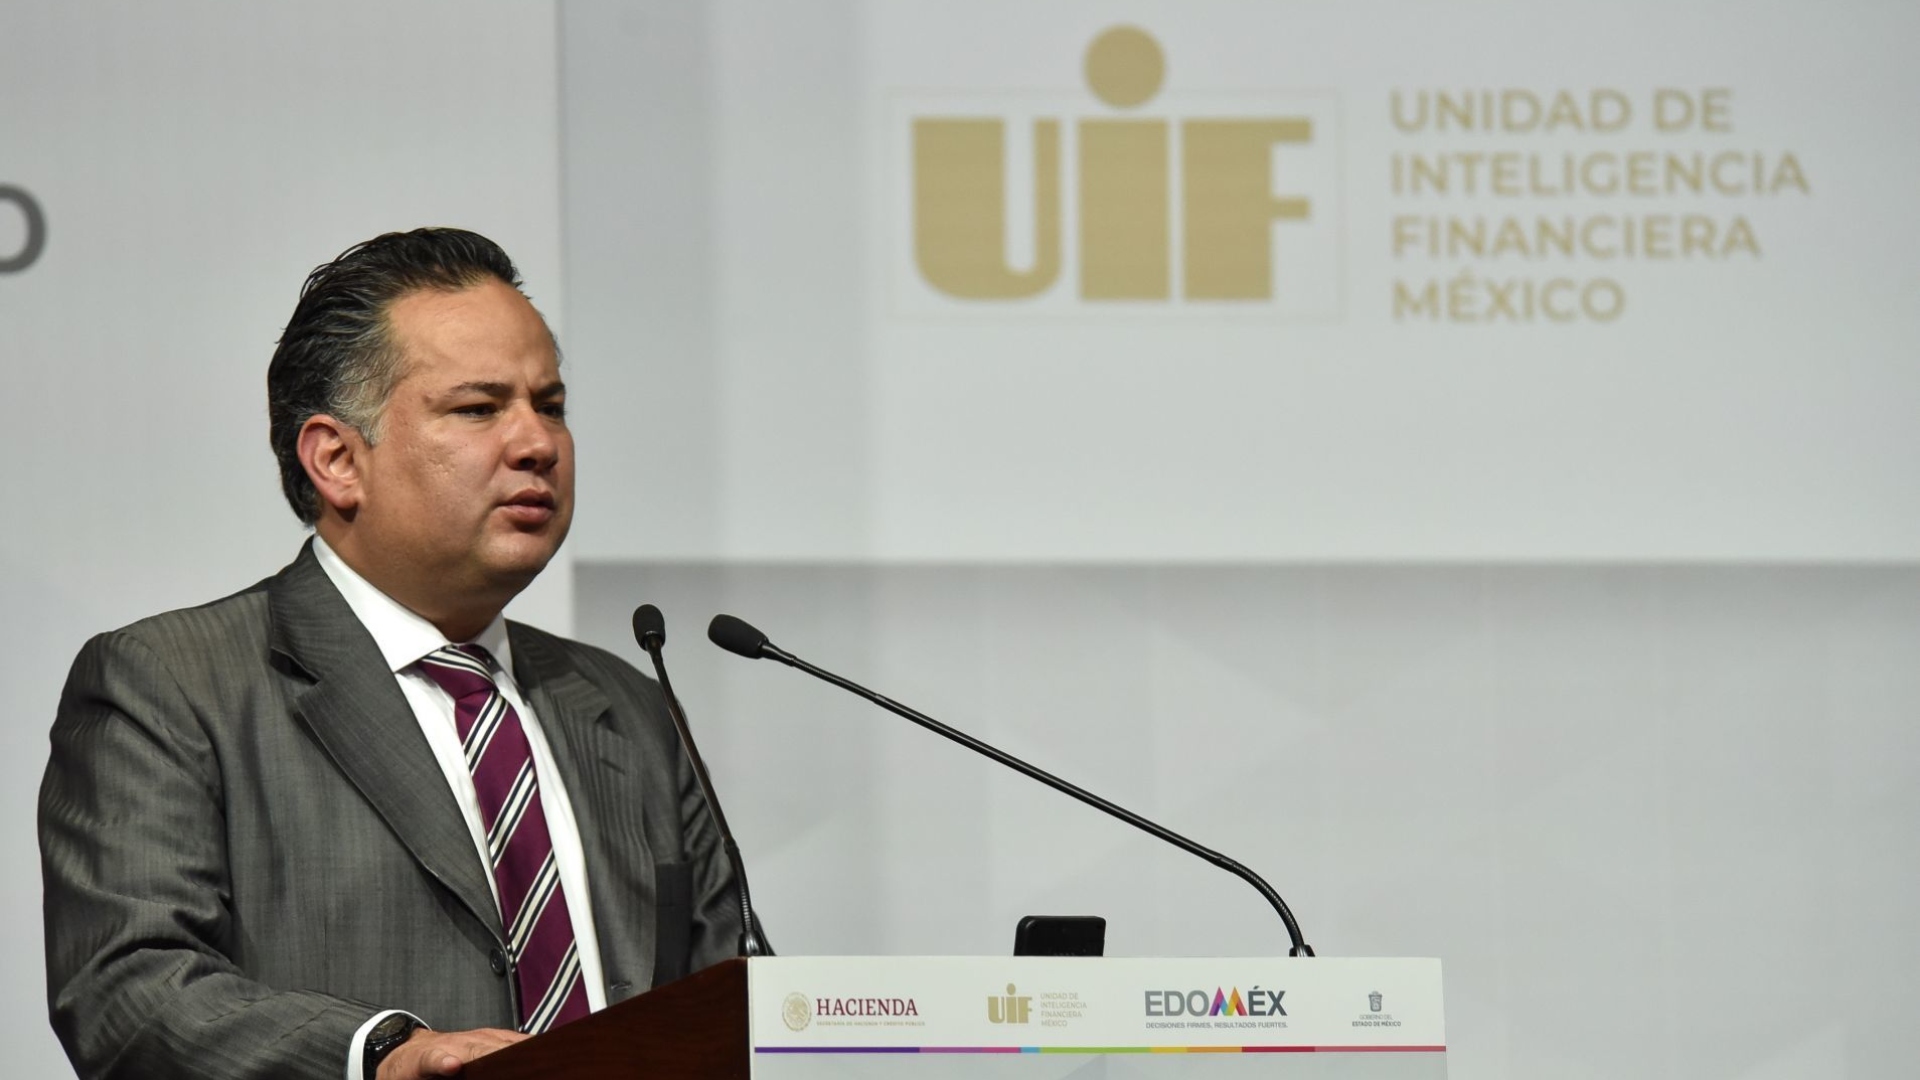 La UIF tiene una investigación abierta en contra de Arturo N. por presunto lavado de dinero (Foto: Cuartoscuro)